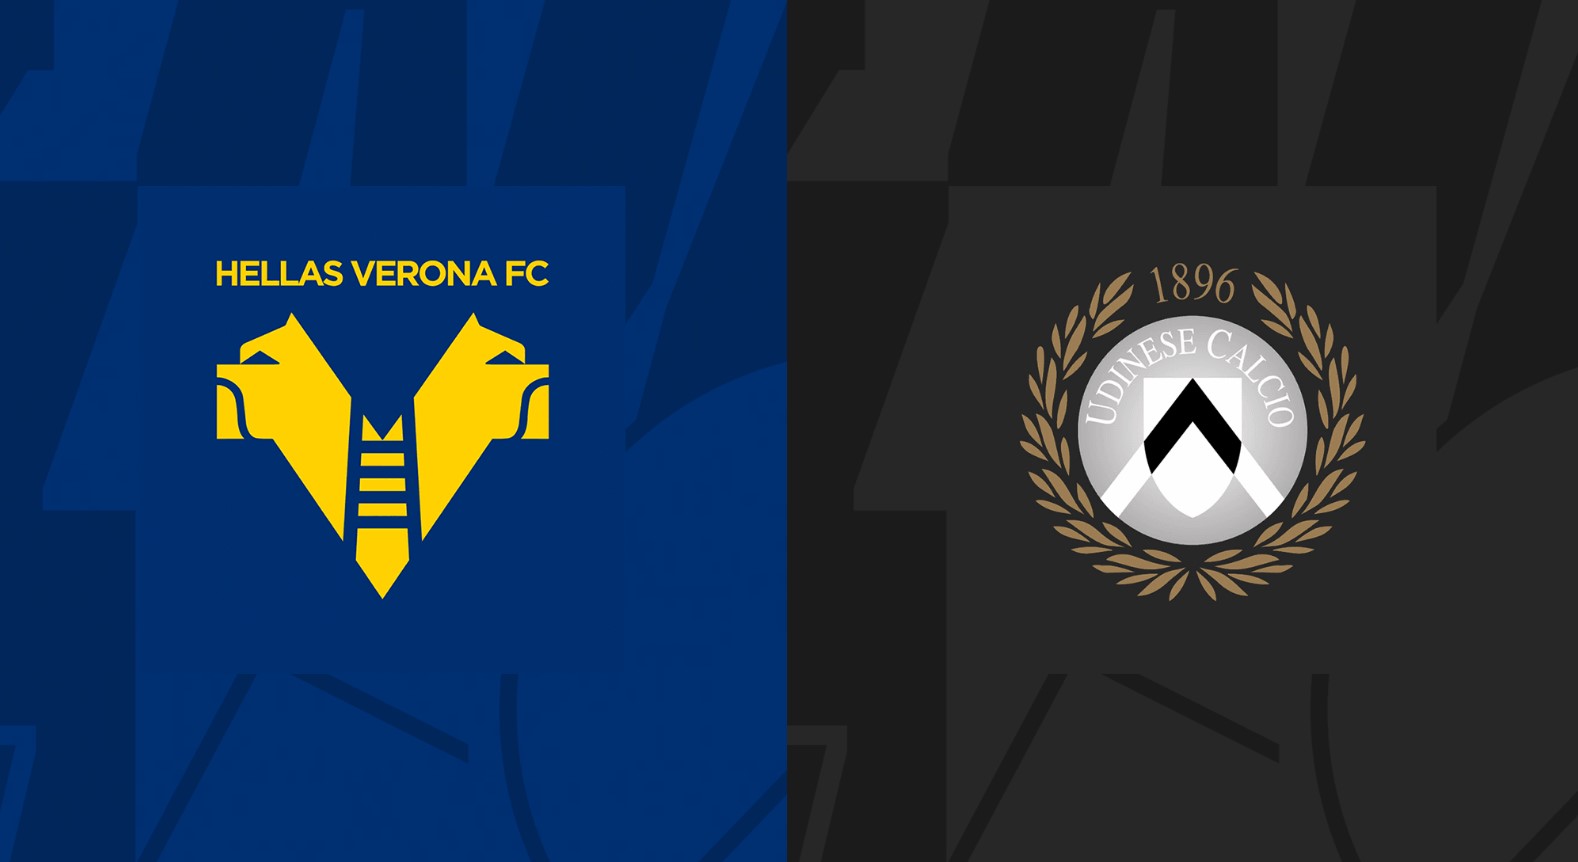 Verona và Udinese có mối quan hệ cạnh tranh trên sân cỏ với kết quả khá cân bằng